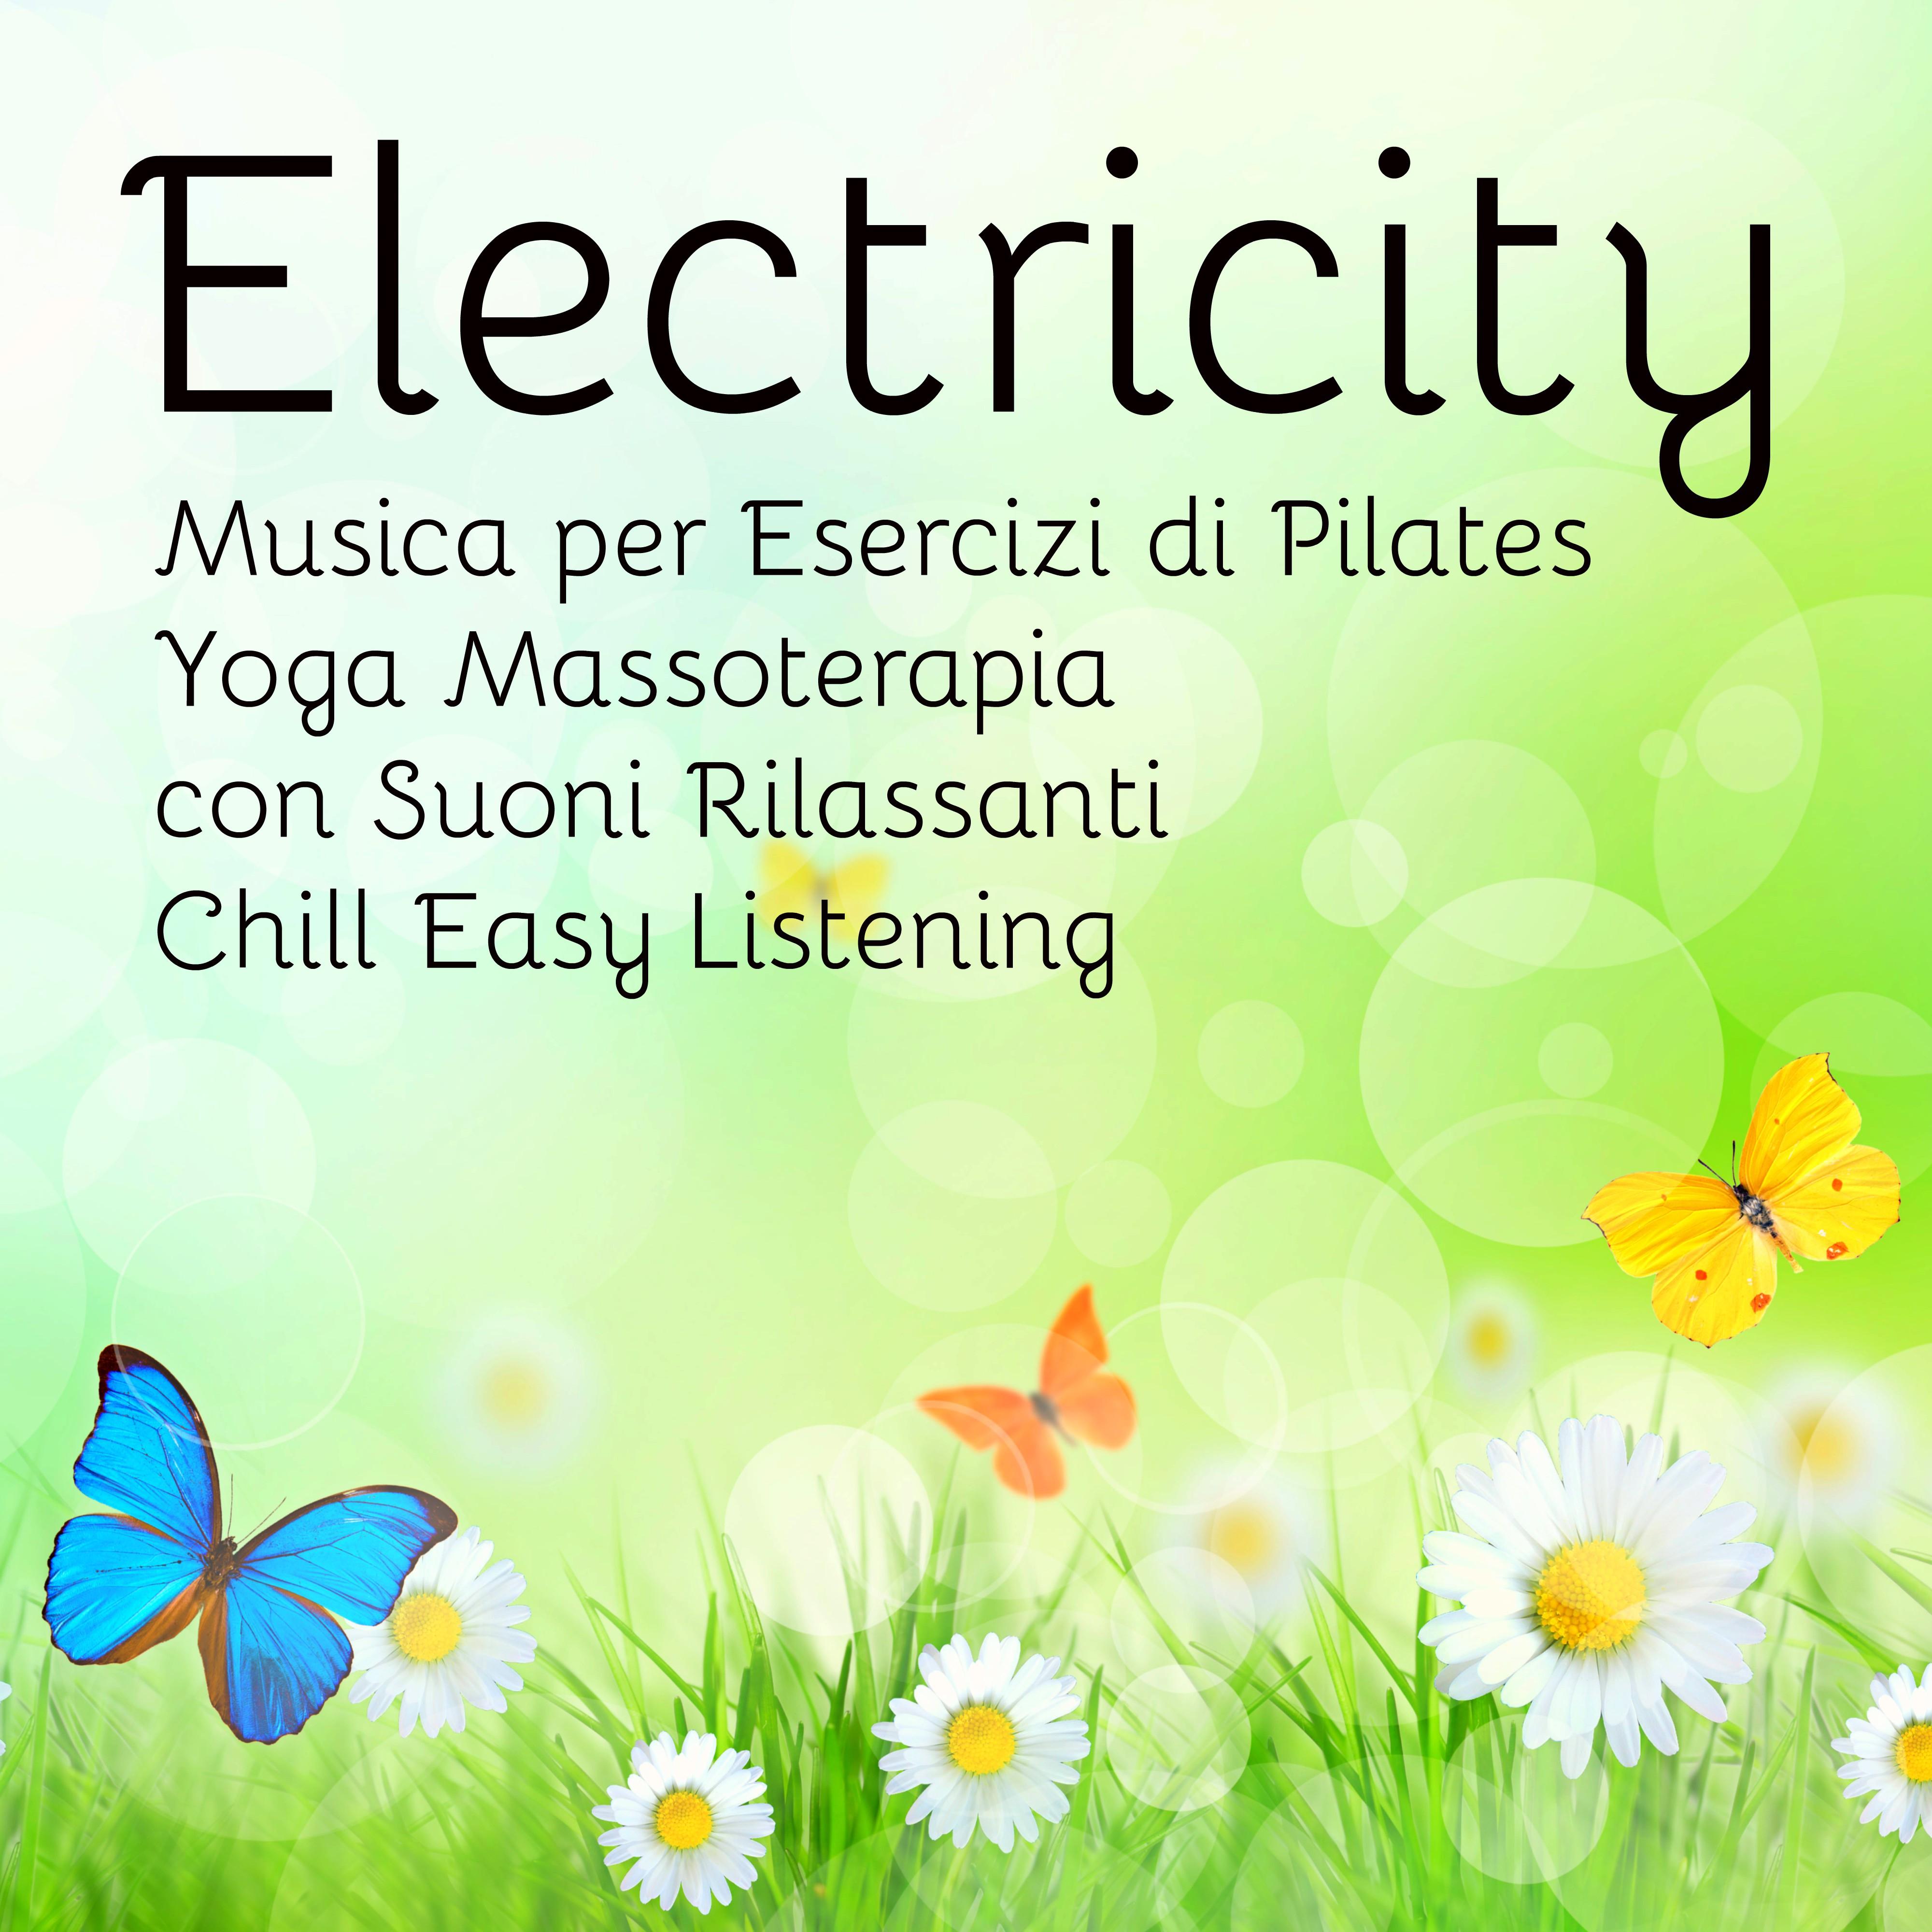 Electricity - Musica per Esercizi di Pilates Yoga Massoterapia con Suoni Rilassanti Chill Easy Listening